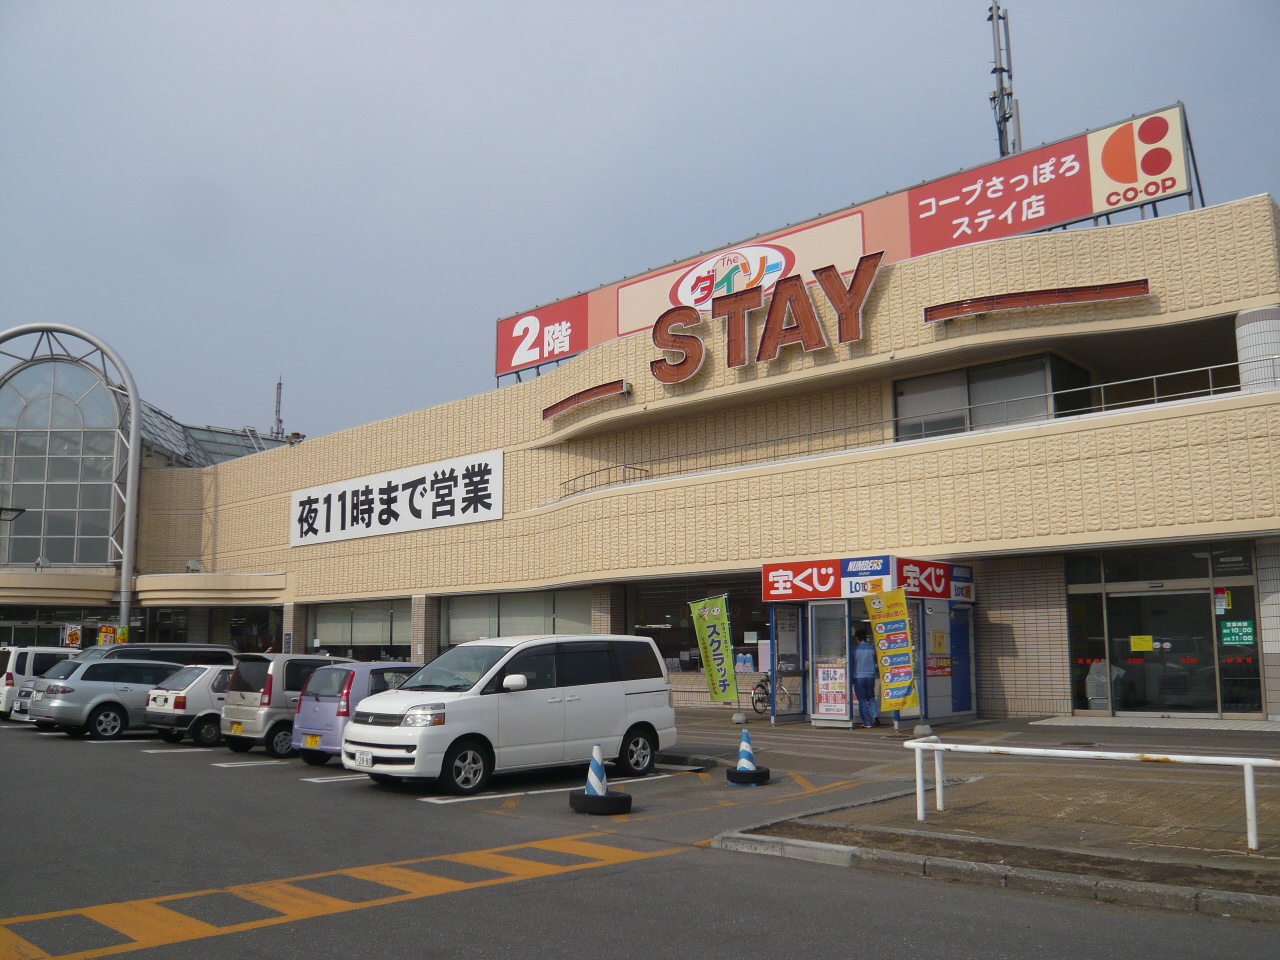 Supermarket. 881m until KopuSapporo Stay store (Super)